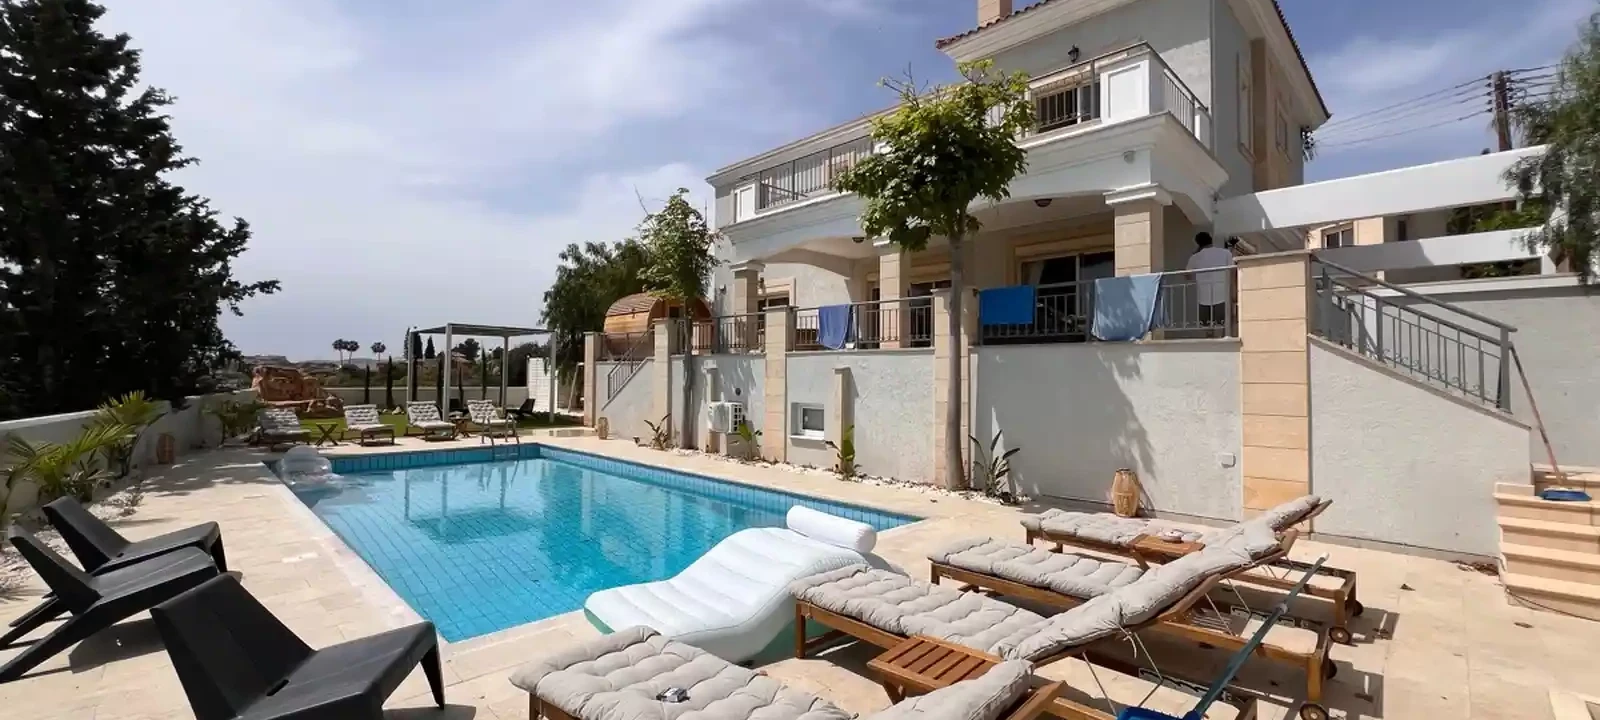 6-bedroom villa to rent €15.000, image 1